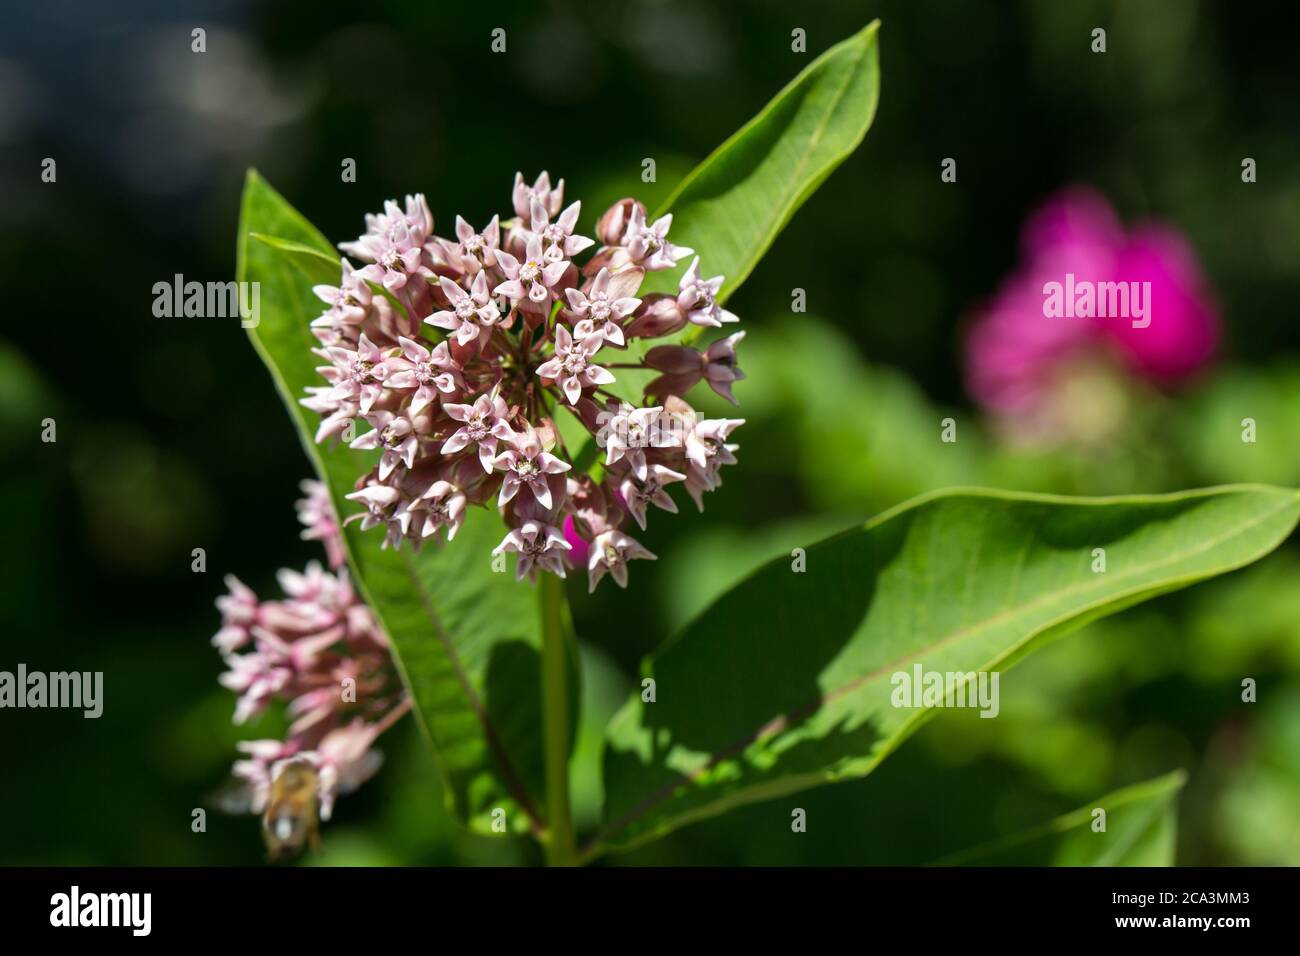 Gros plan d'Asclepias syriaca. Les noms communs incluent le milkweed, la fleur de papillon et le silkweed. Appartenant à la famille des Apocynacées. Banque D'Images